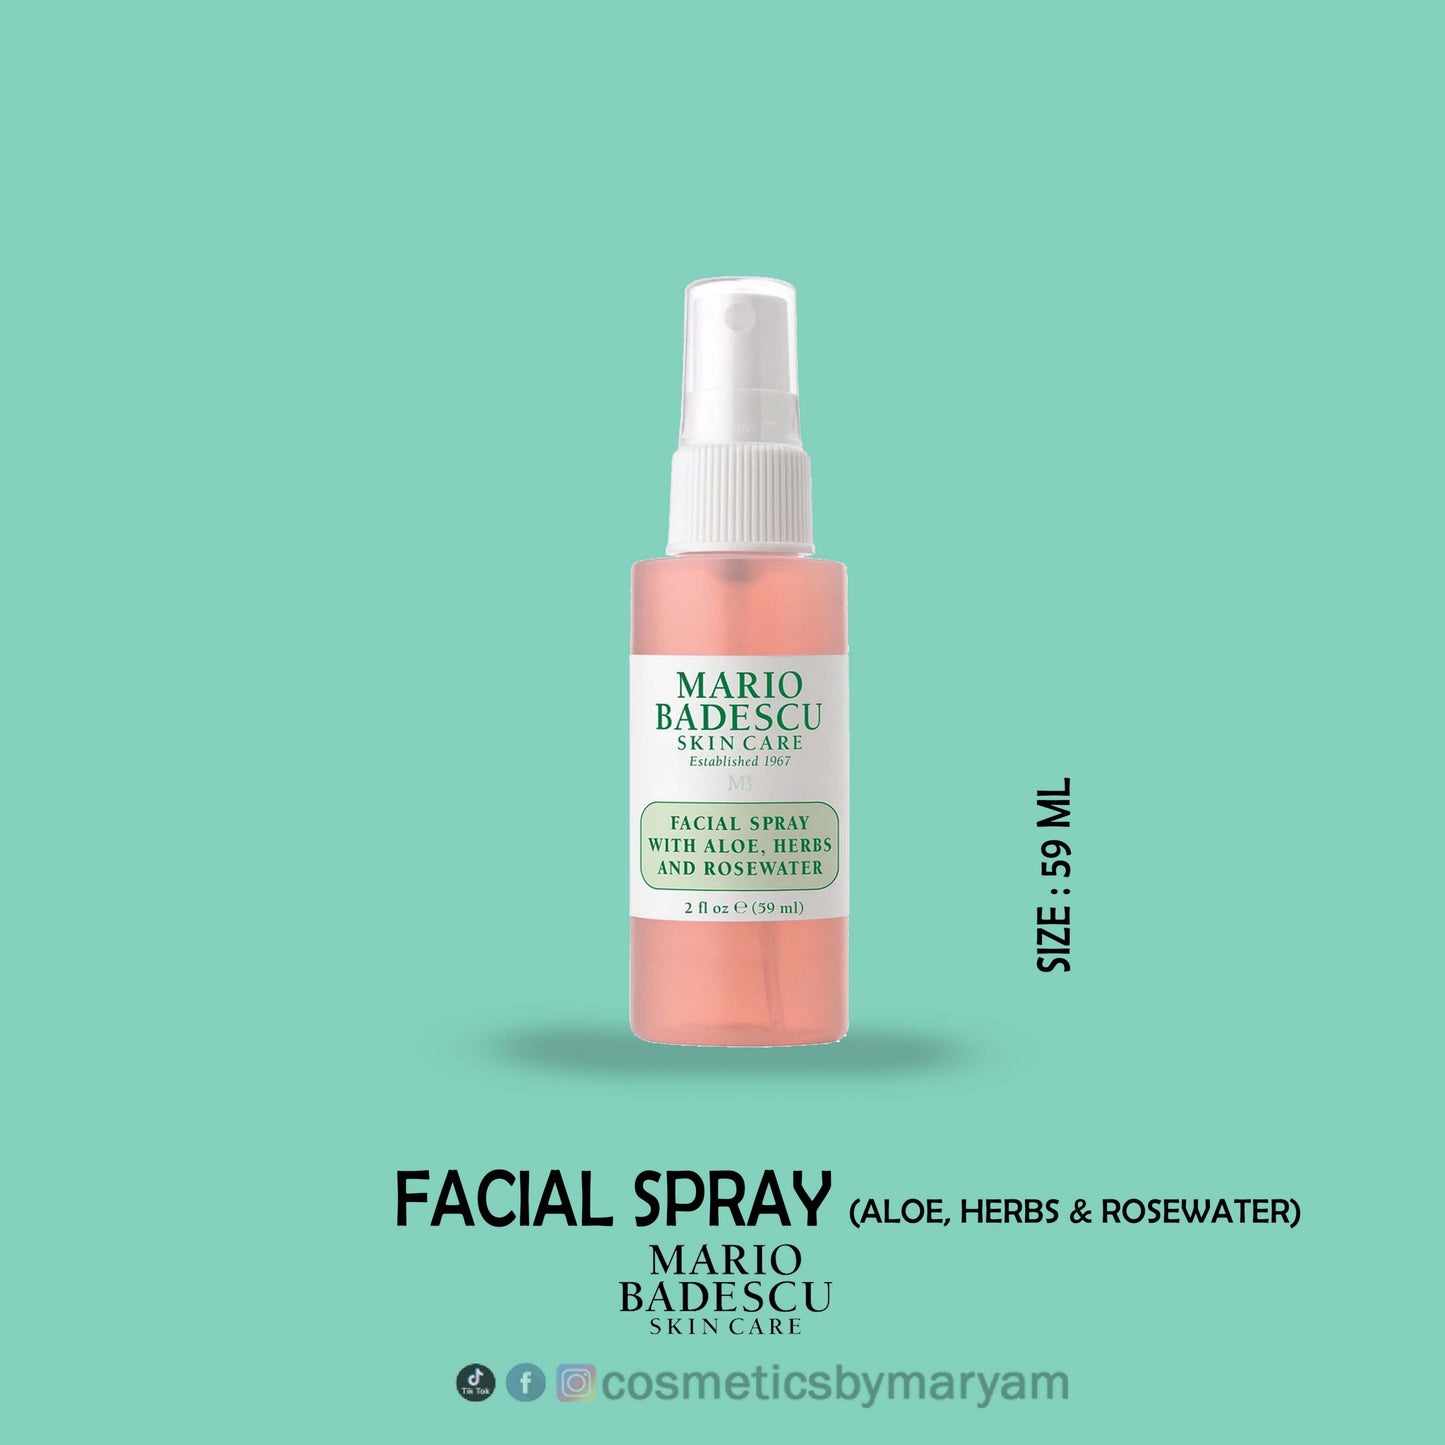 Mario Badescu Facial Spray Aloe, Herbs and Rosewater